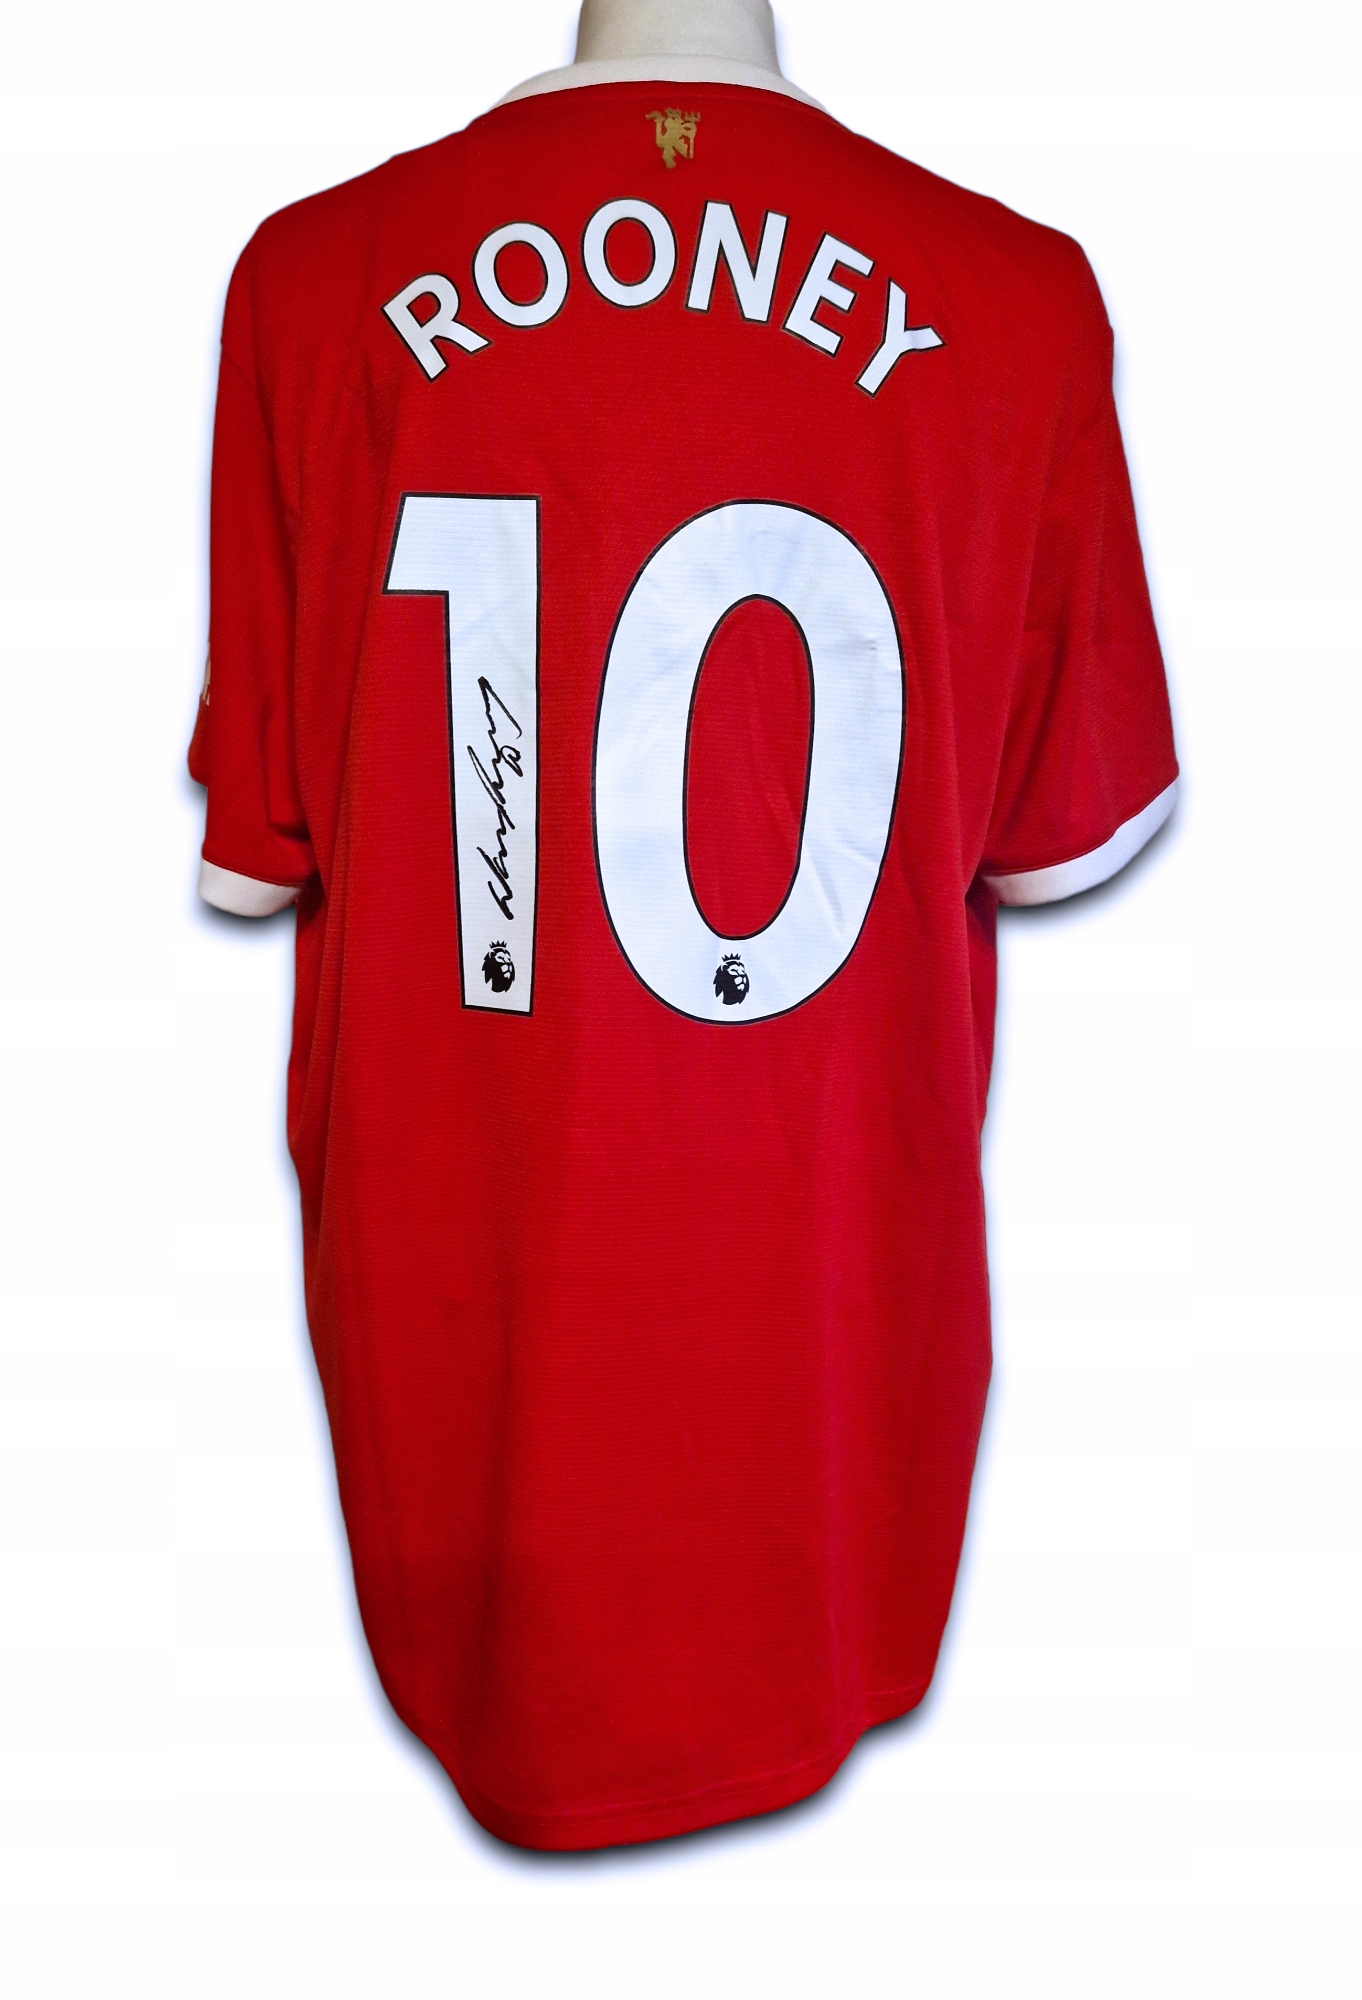 Rooney, Manchester United - koszulka z autografem (zag)